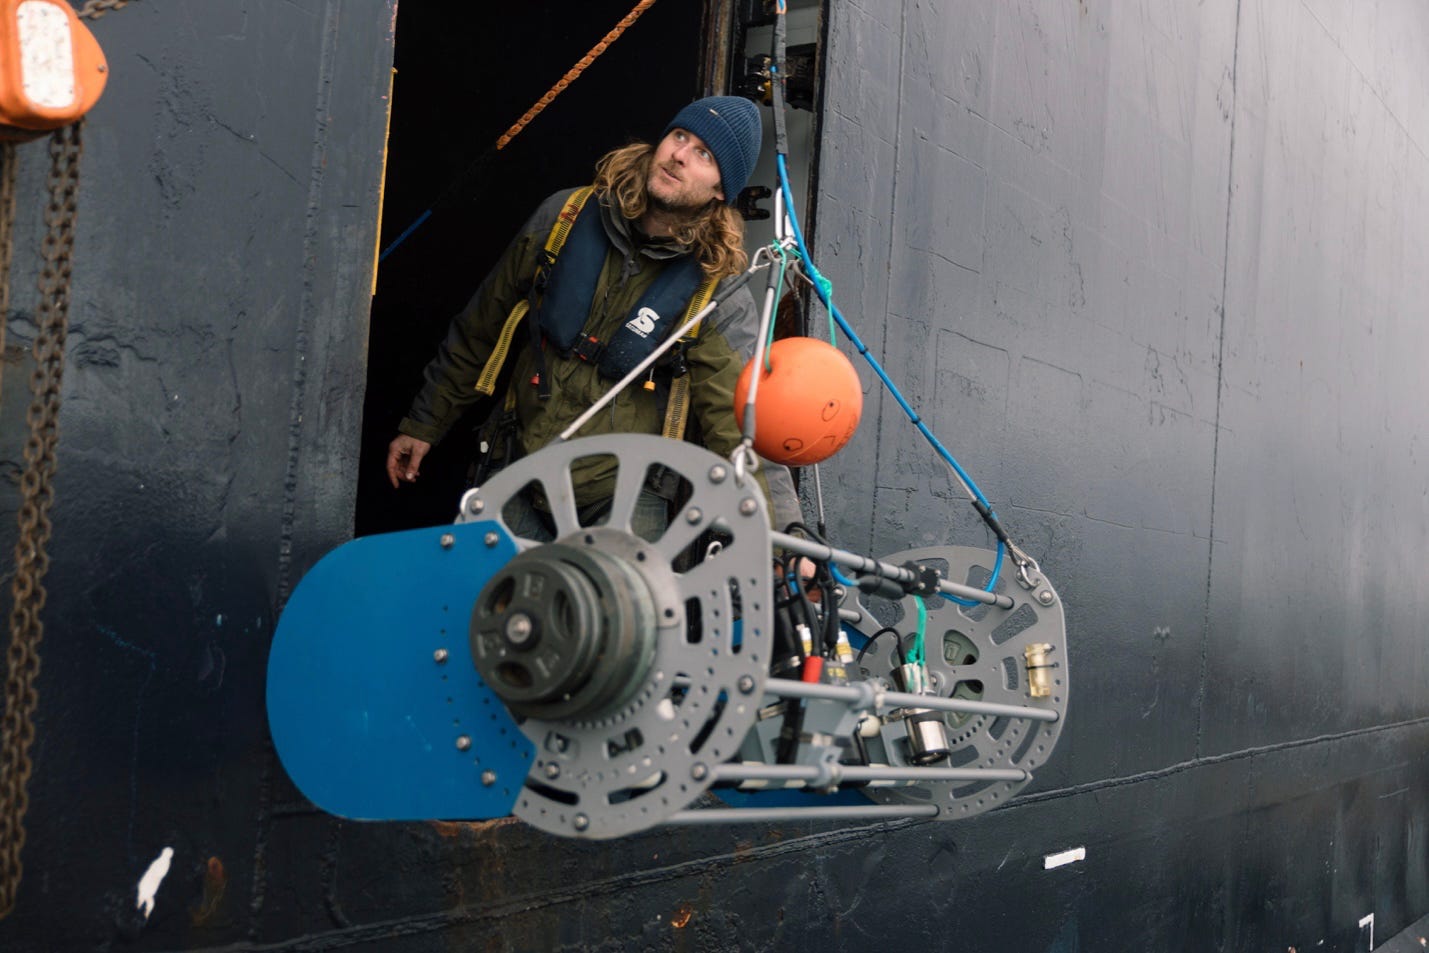 Ein Mann mit Mütze steht in einem Kreuzfahrtschiff mit einer riesigen Kameraausrüstung, die gerade ins Wasser gelassen wird